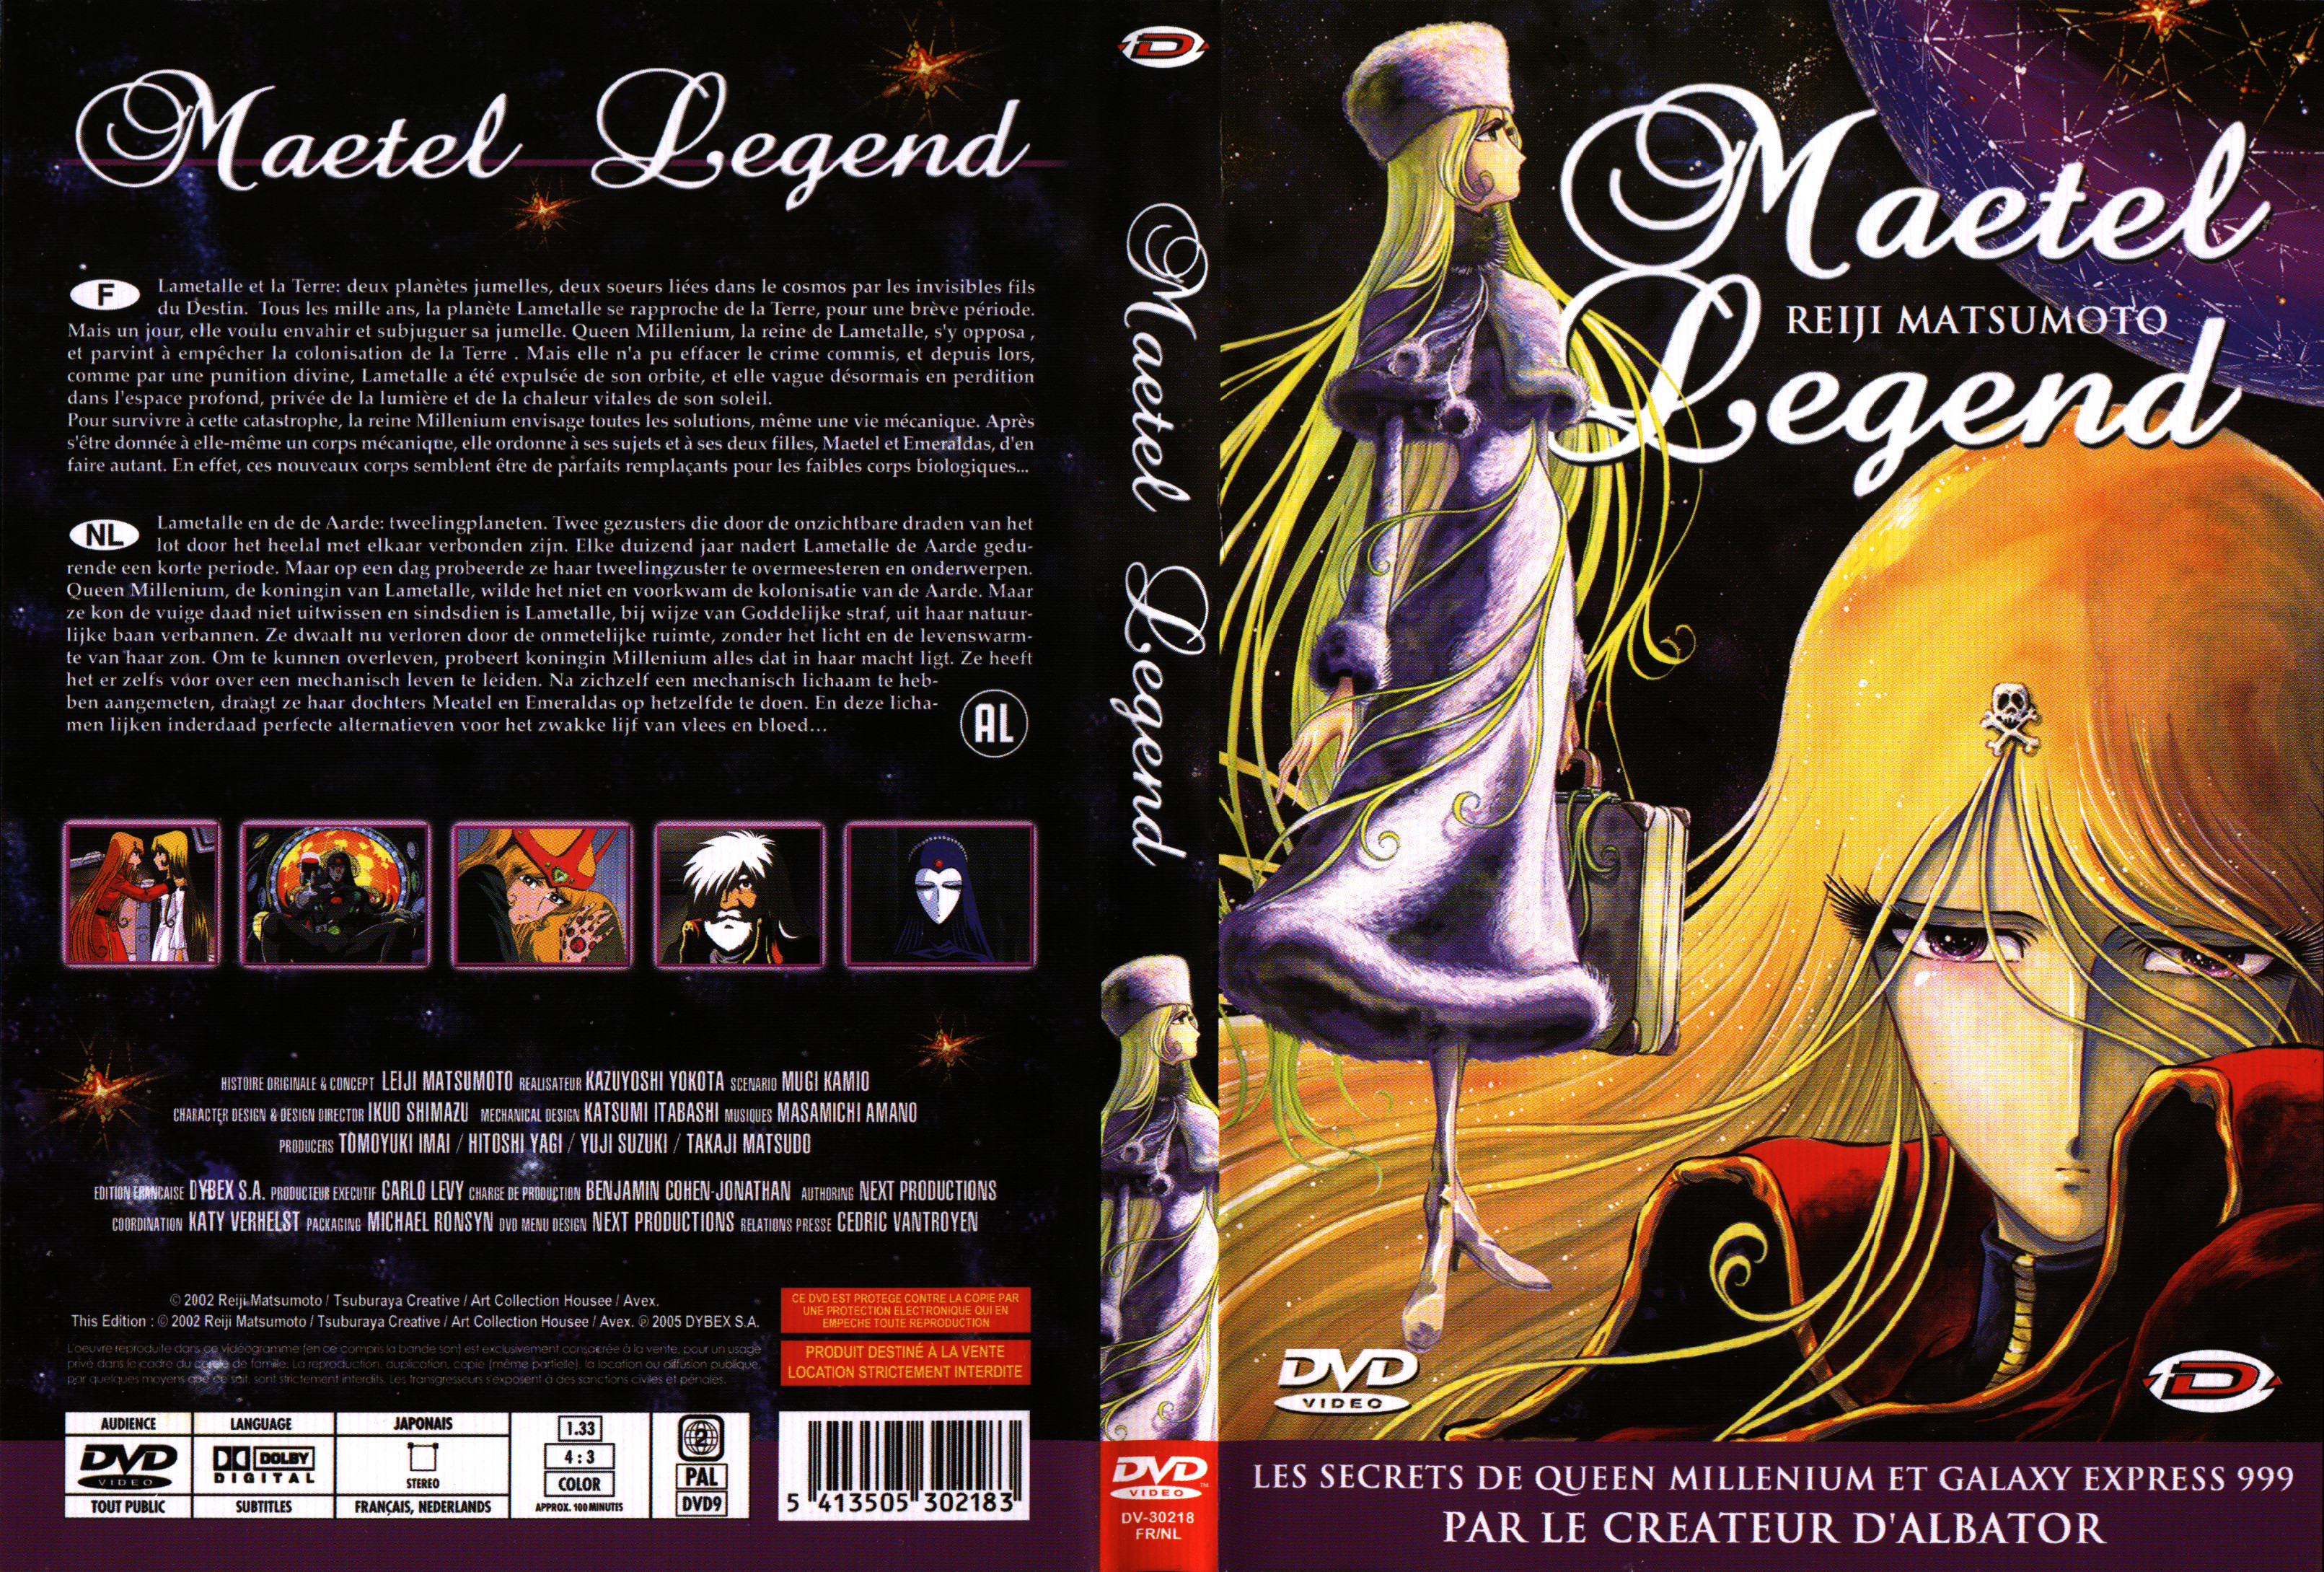 Jaquette DVD Maetel legend